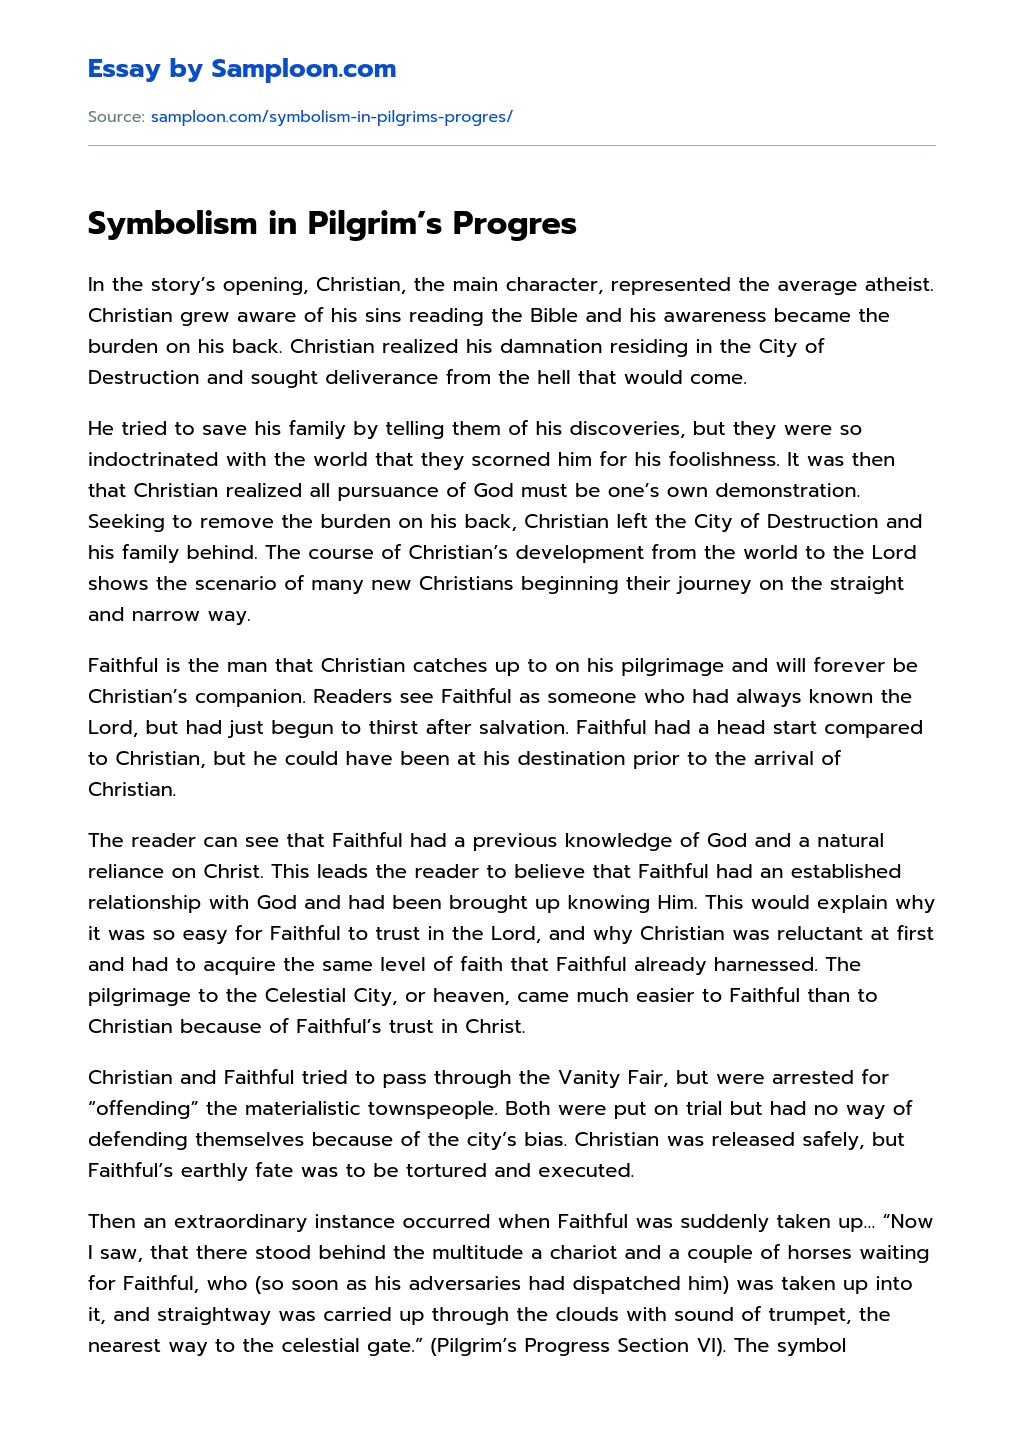 Symbolism in Pilgrim’s Progres essay